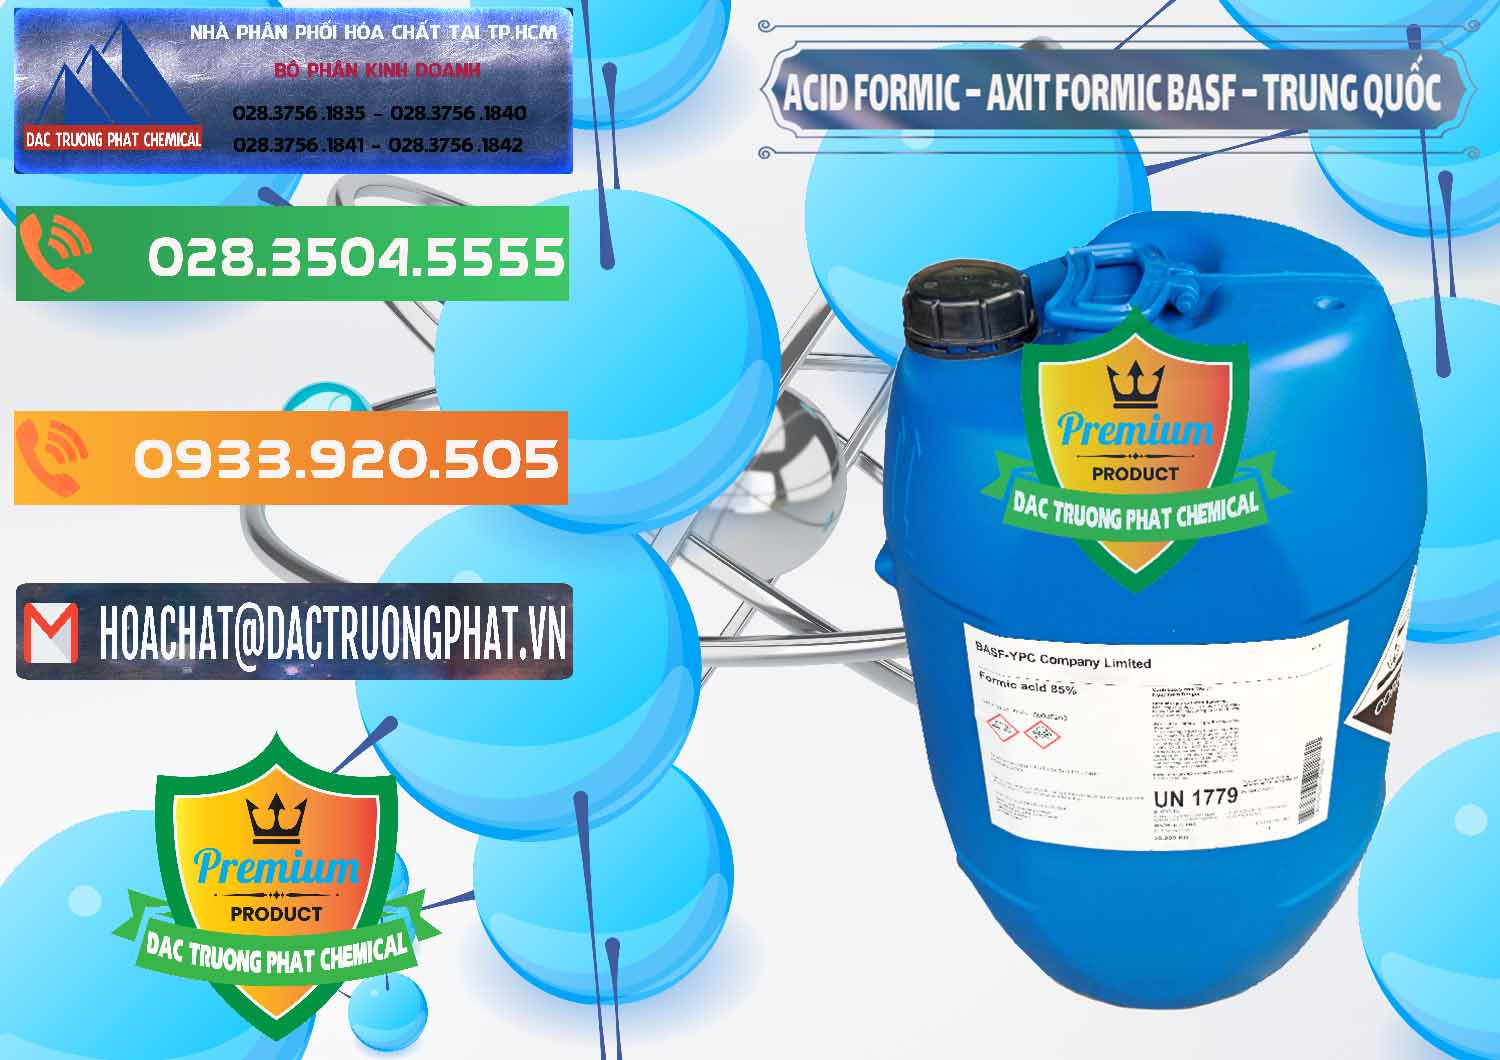 Nơi bán - phân phối Acid Formic - Axit Formic BASF Trung Quốc China - 0025 - Bán - cung cấp hóa chất tại TP.HCM - hoachatxulynuoc.com.vn